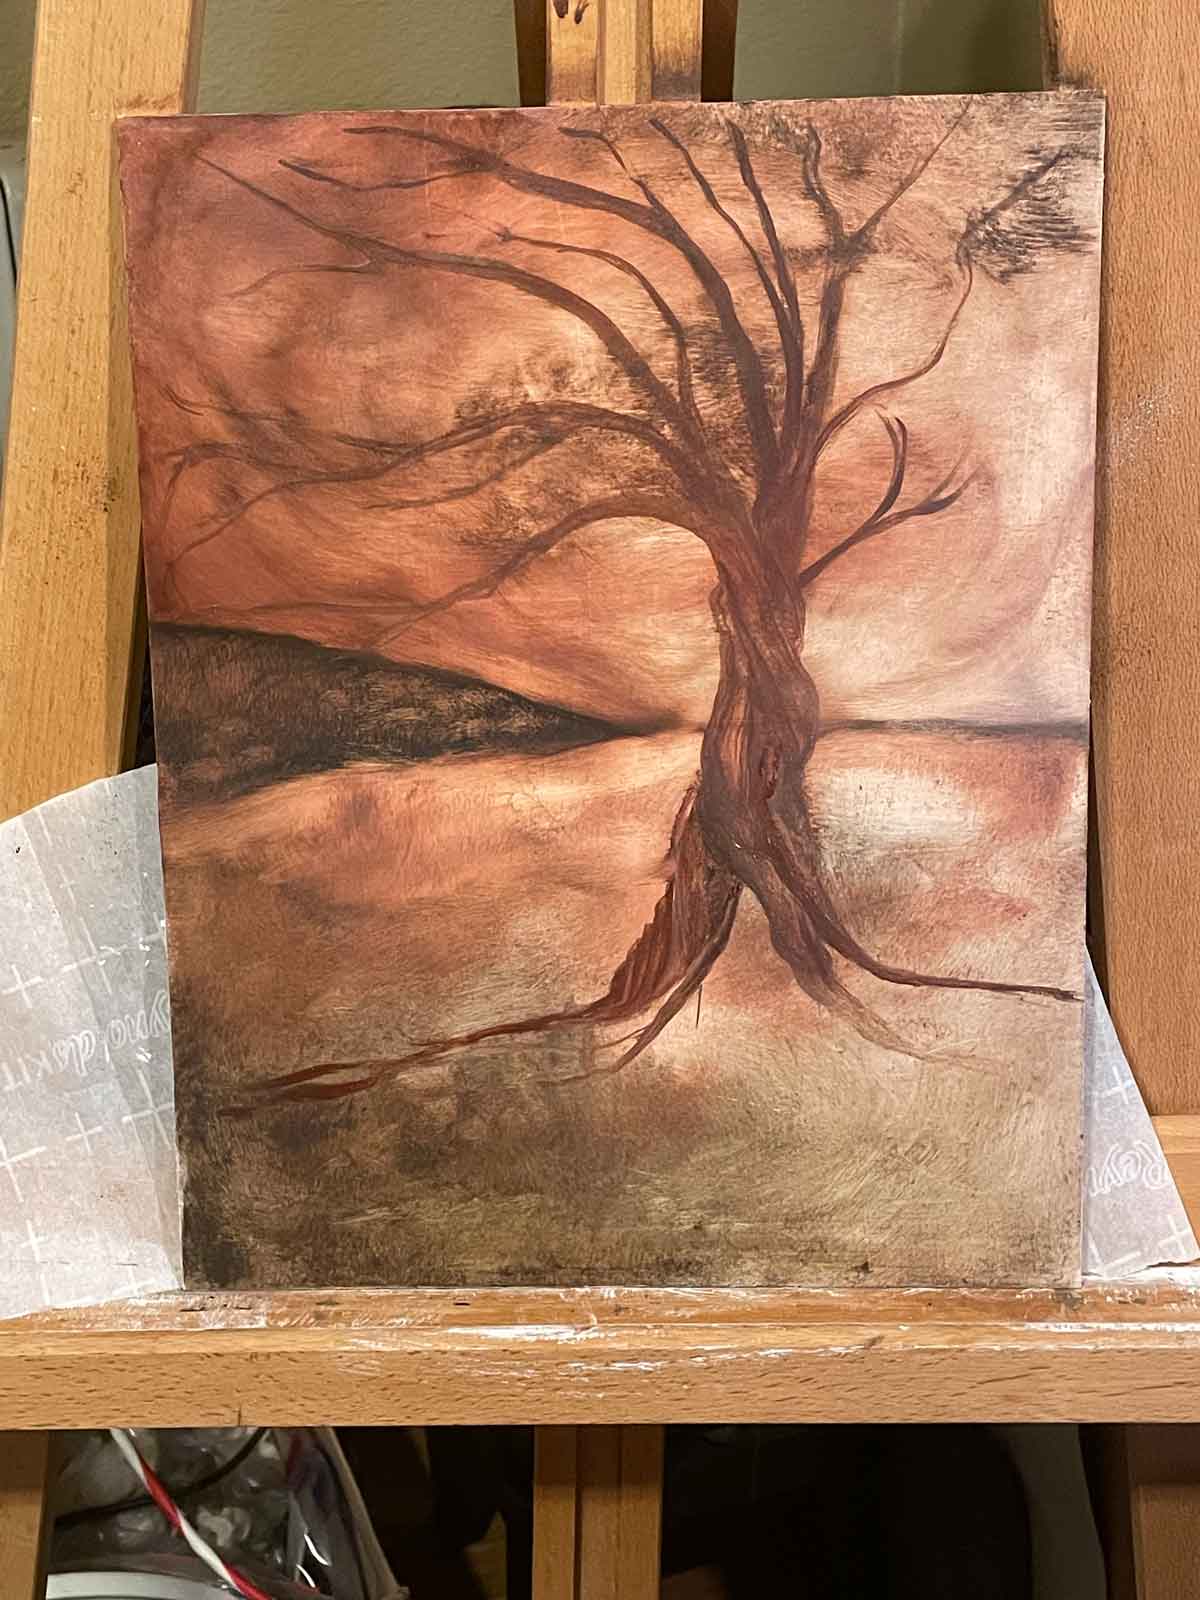 An Twisted Tree in Ozark pigment Oils, in progress.